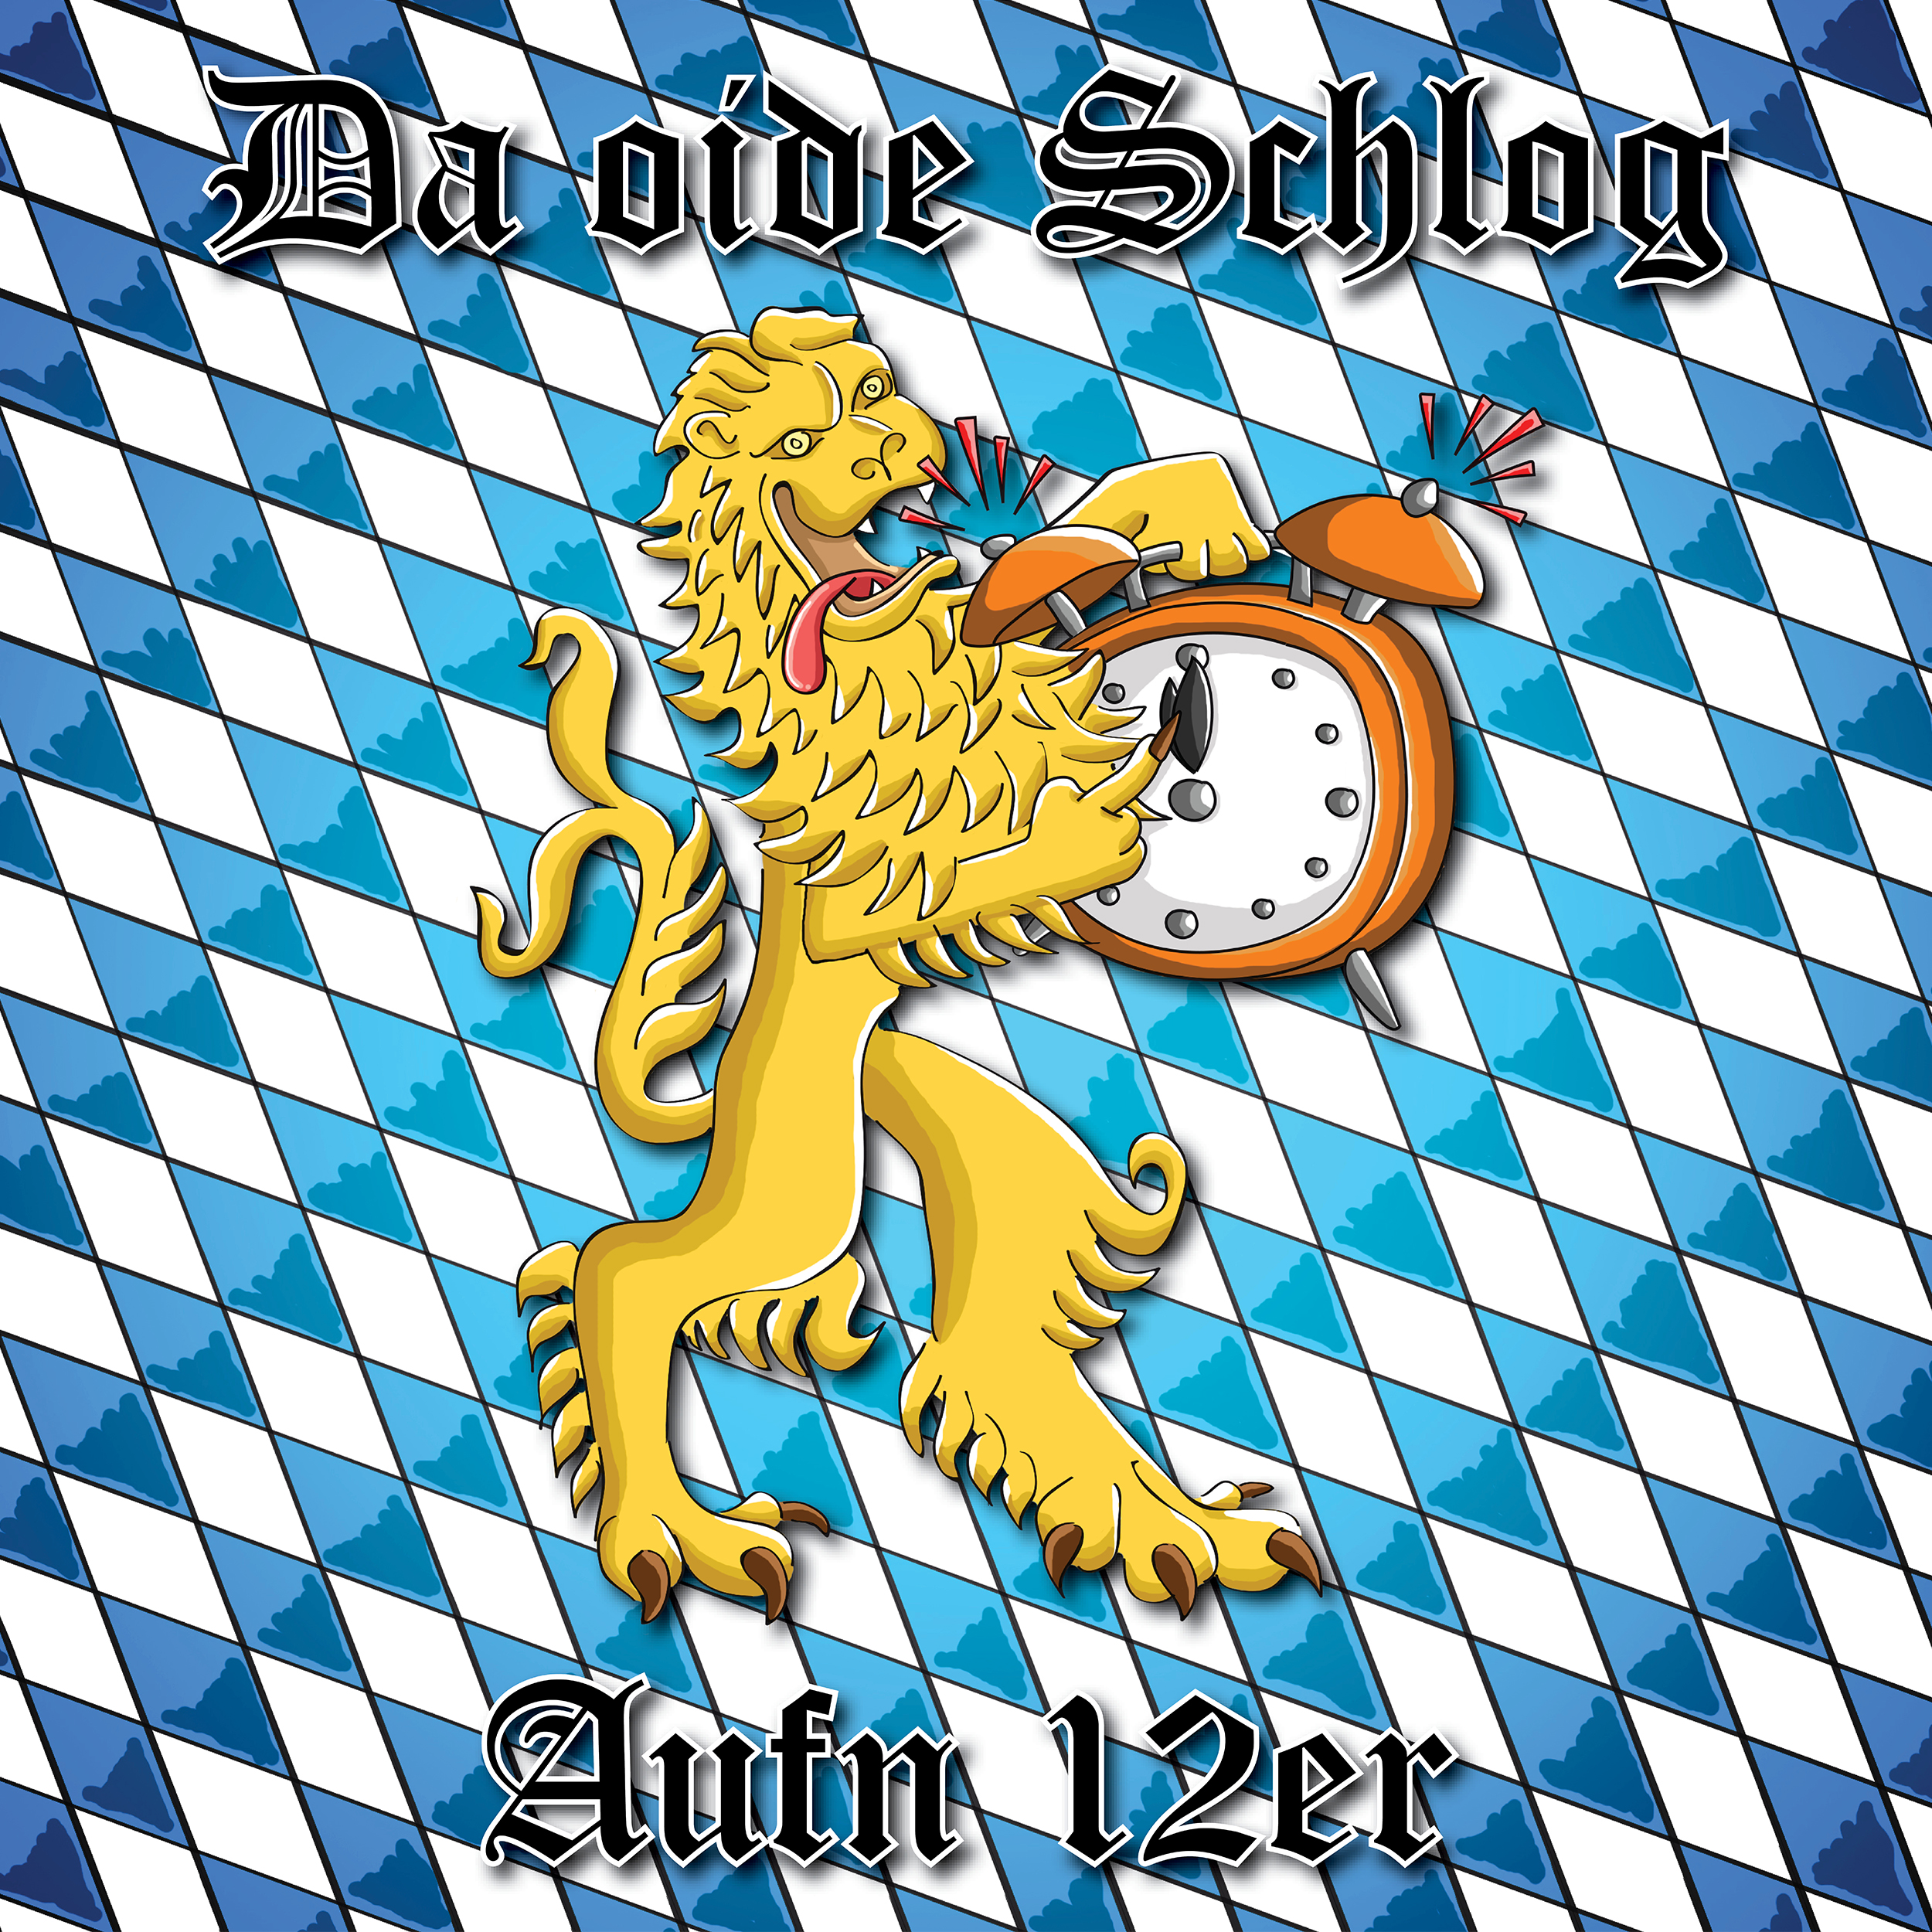 da-oide-schlog-aufn-12er-ein-album-review